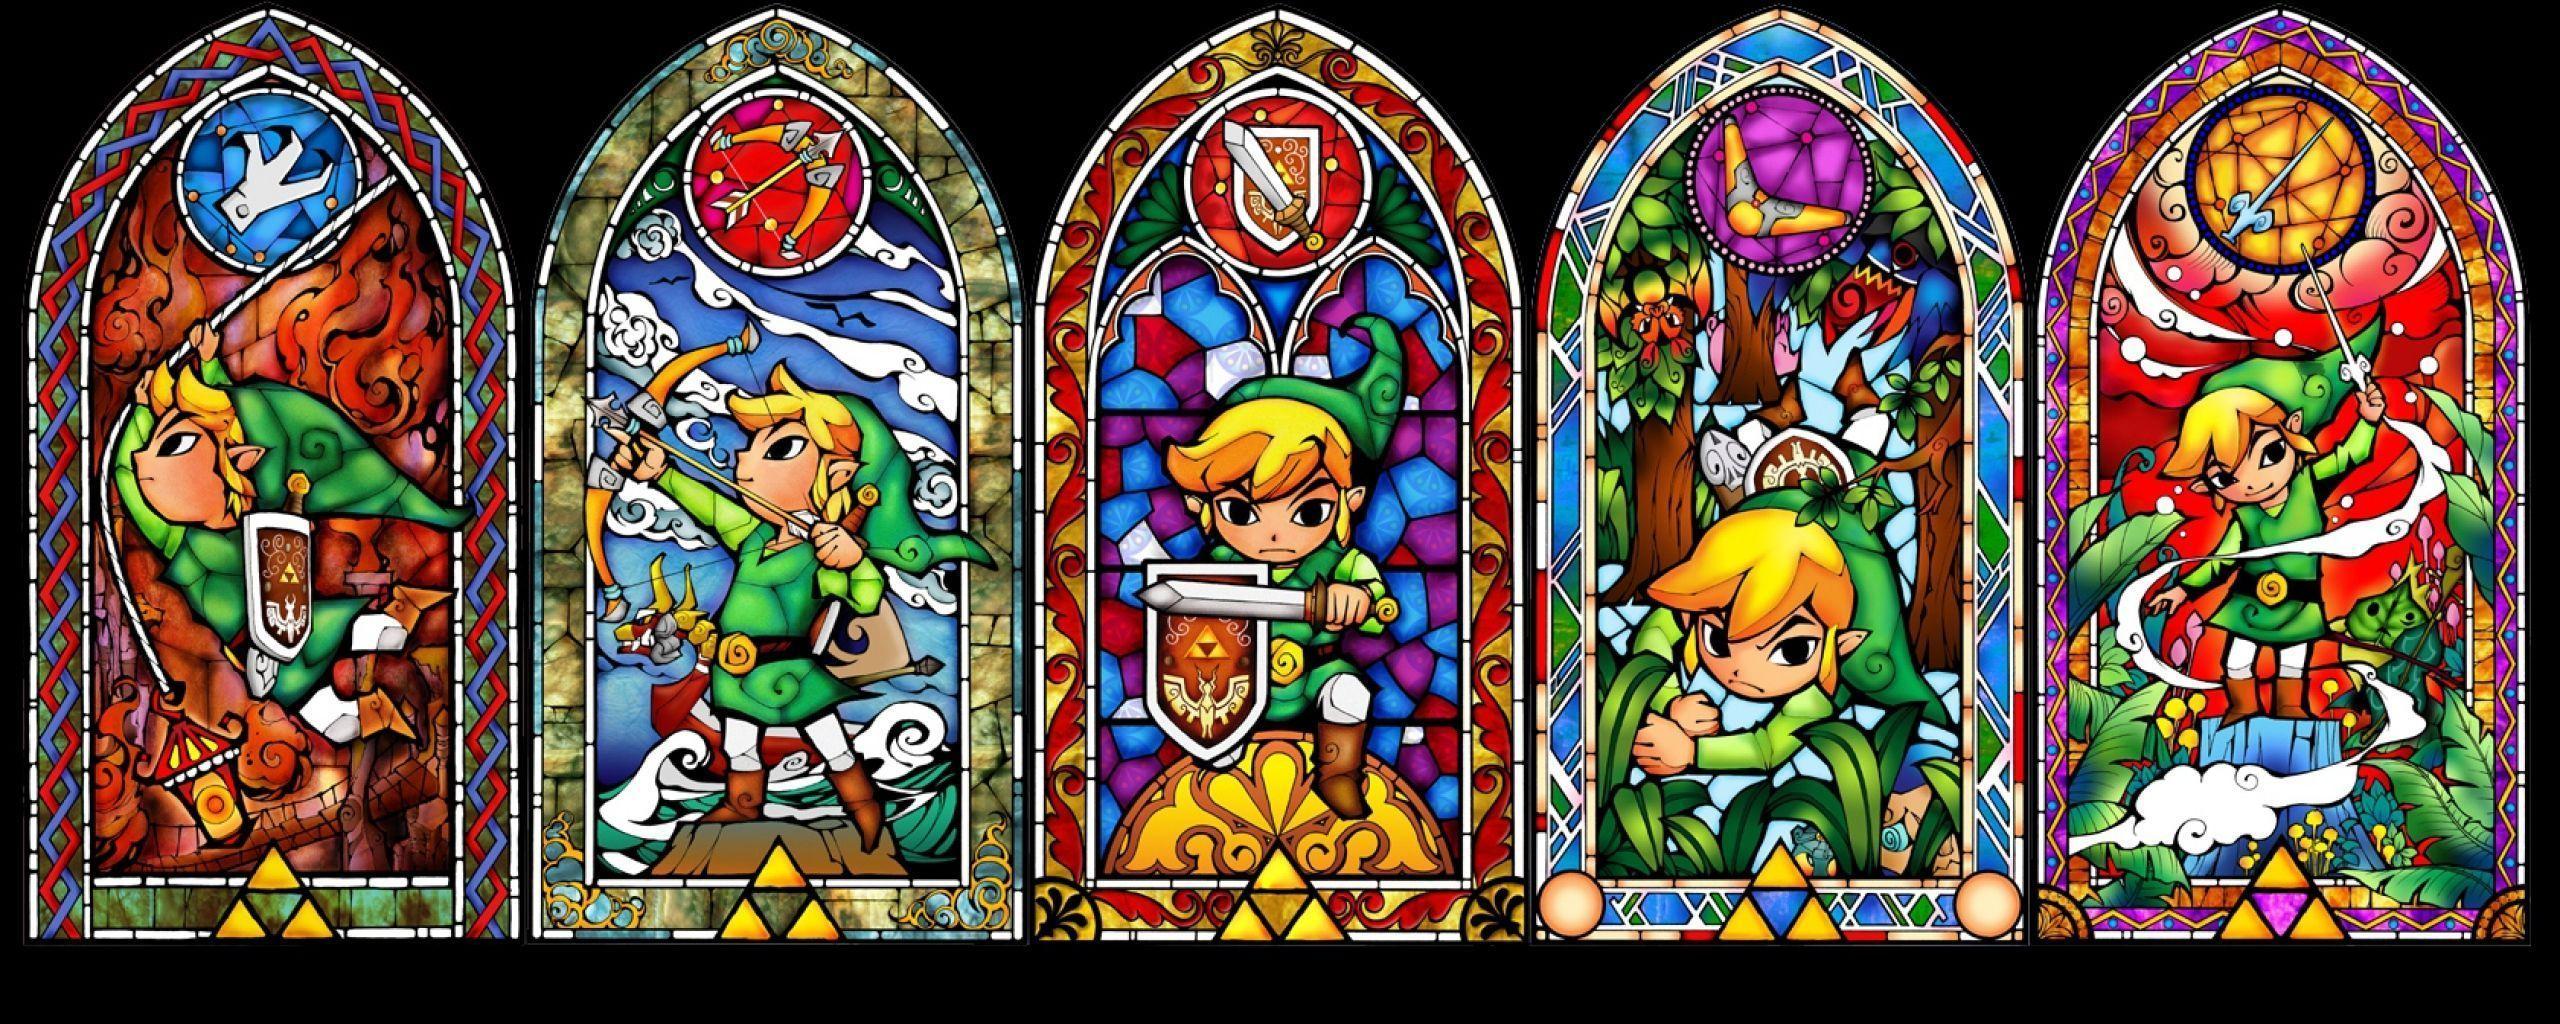 Legend Of Zelda Dual Monitor Wallpaper The Legend Of Zelda, Link ...